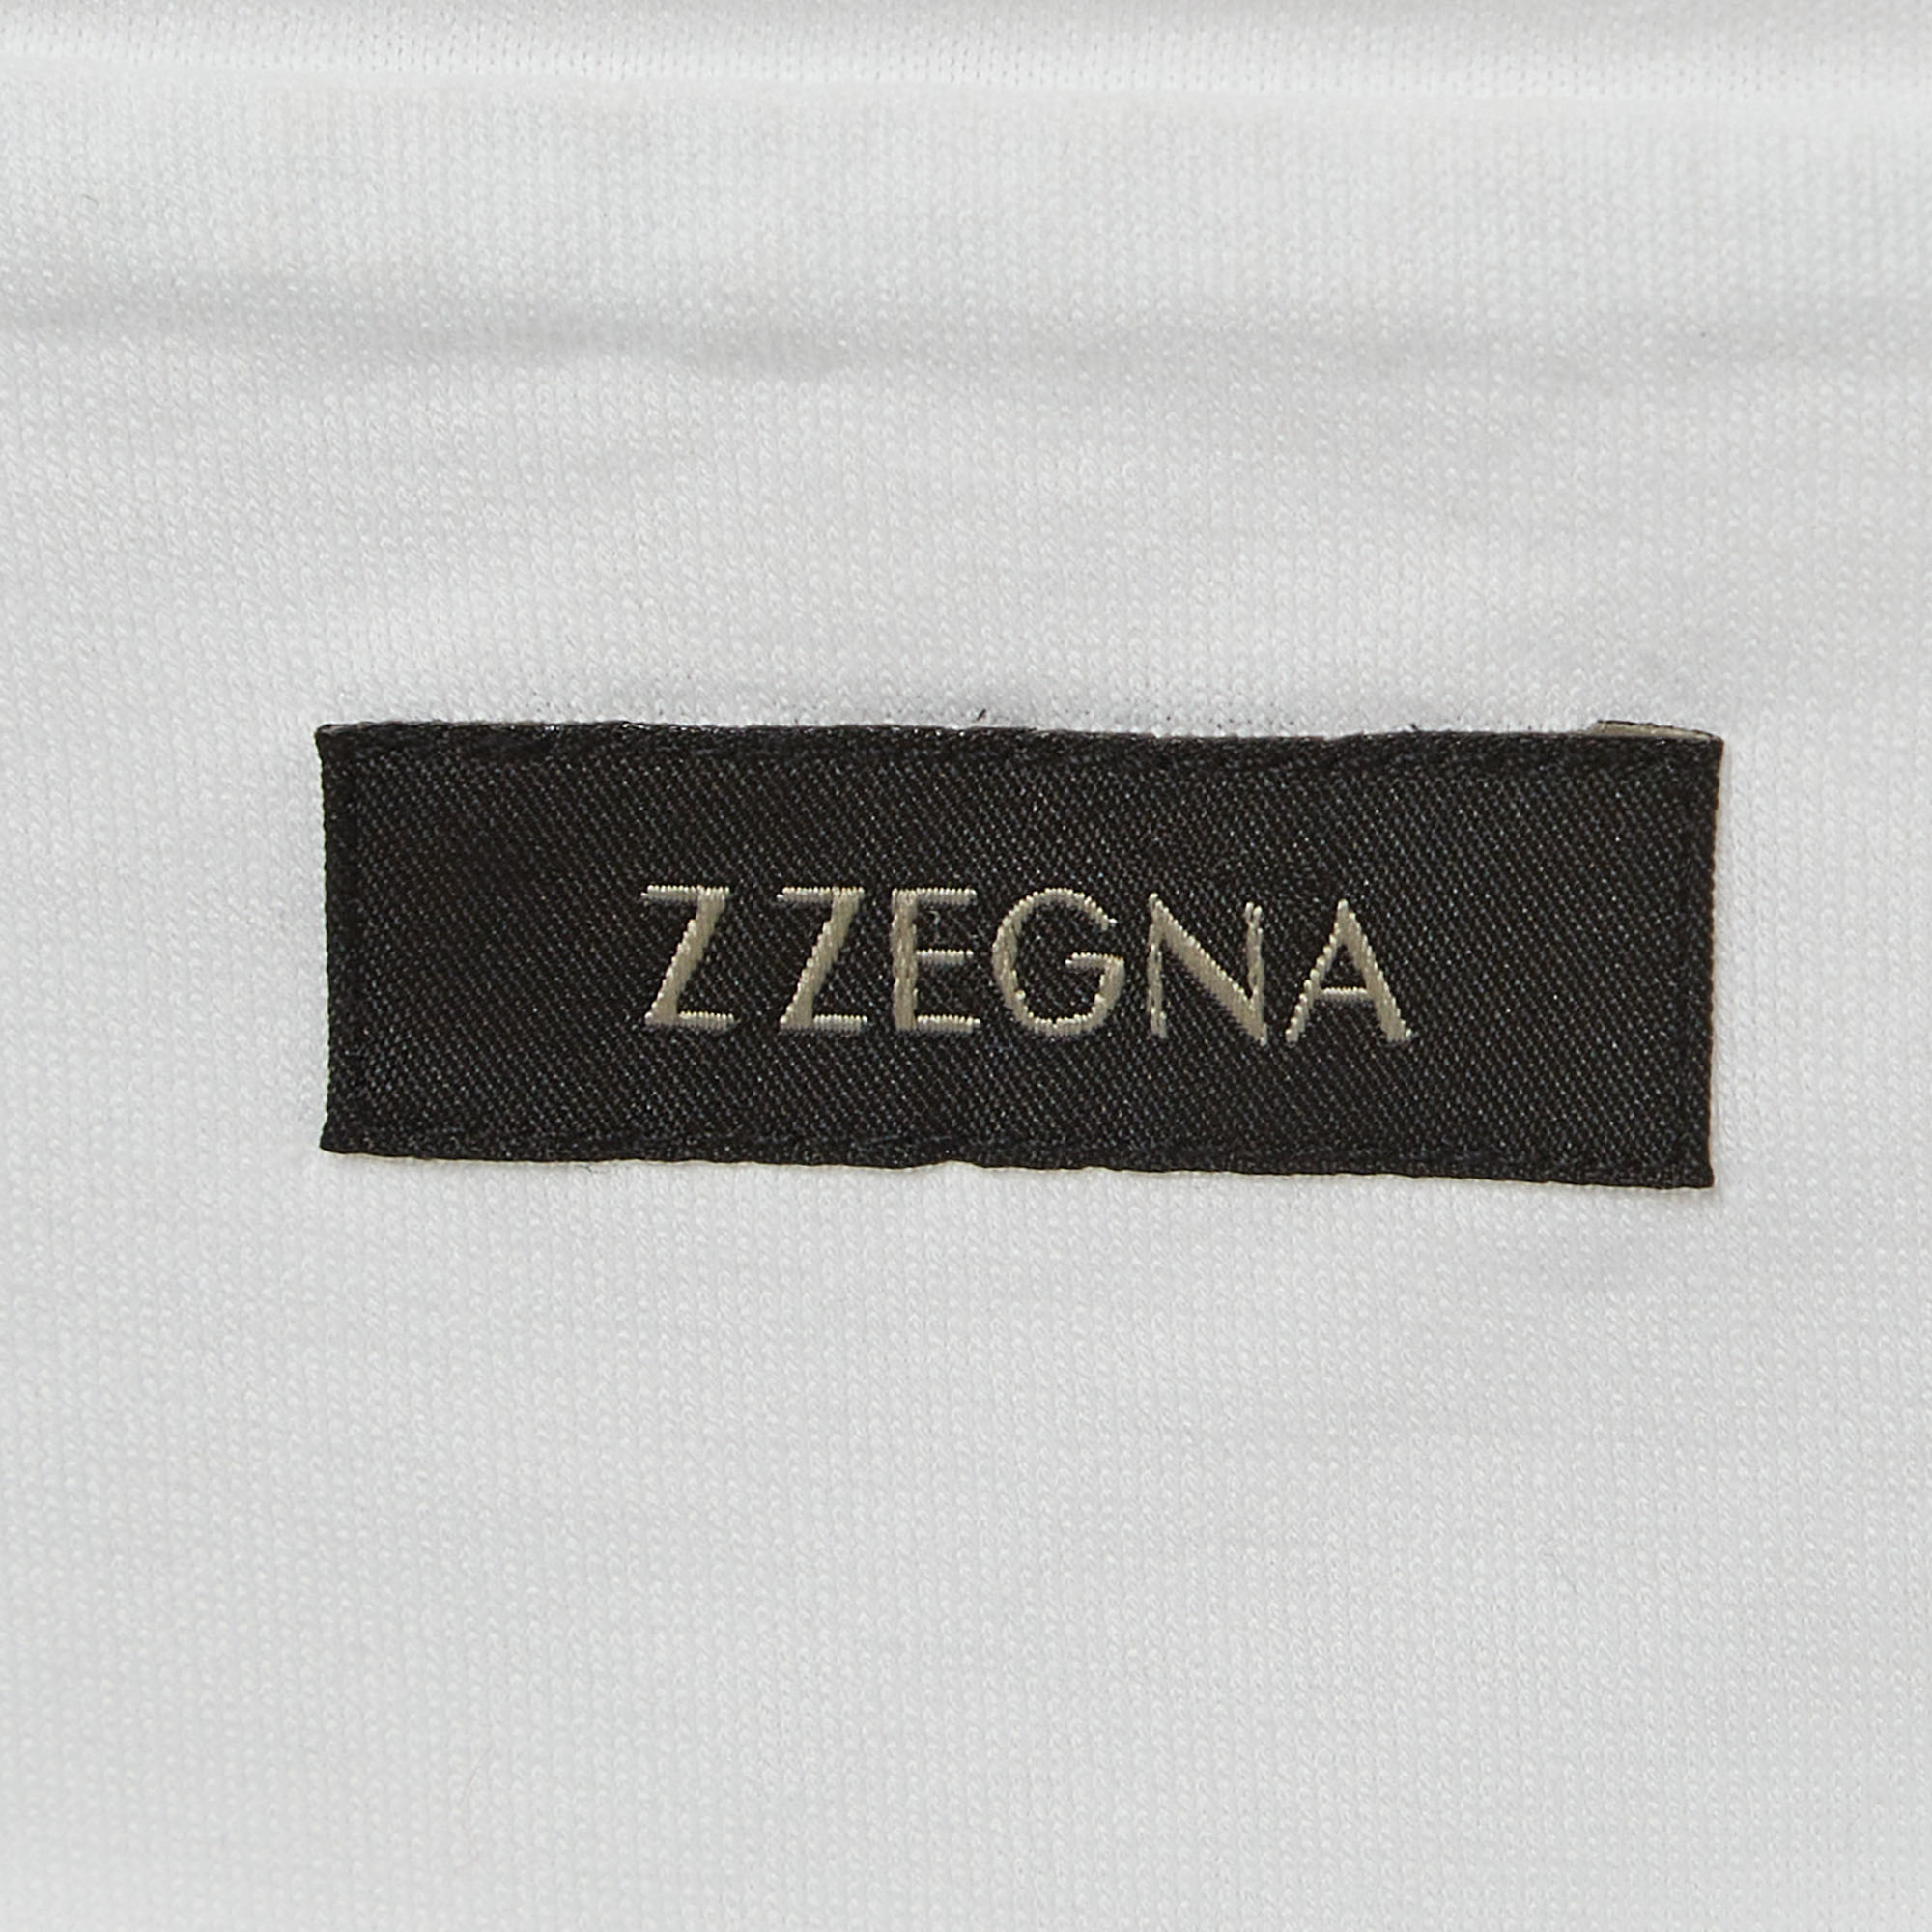 Z Zegna White Sailing Boat Print Cotton Crew Neck T-Shirt M